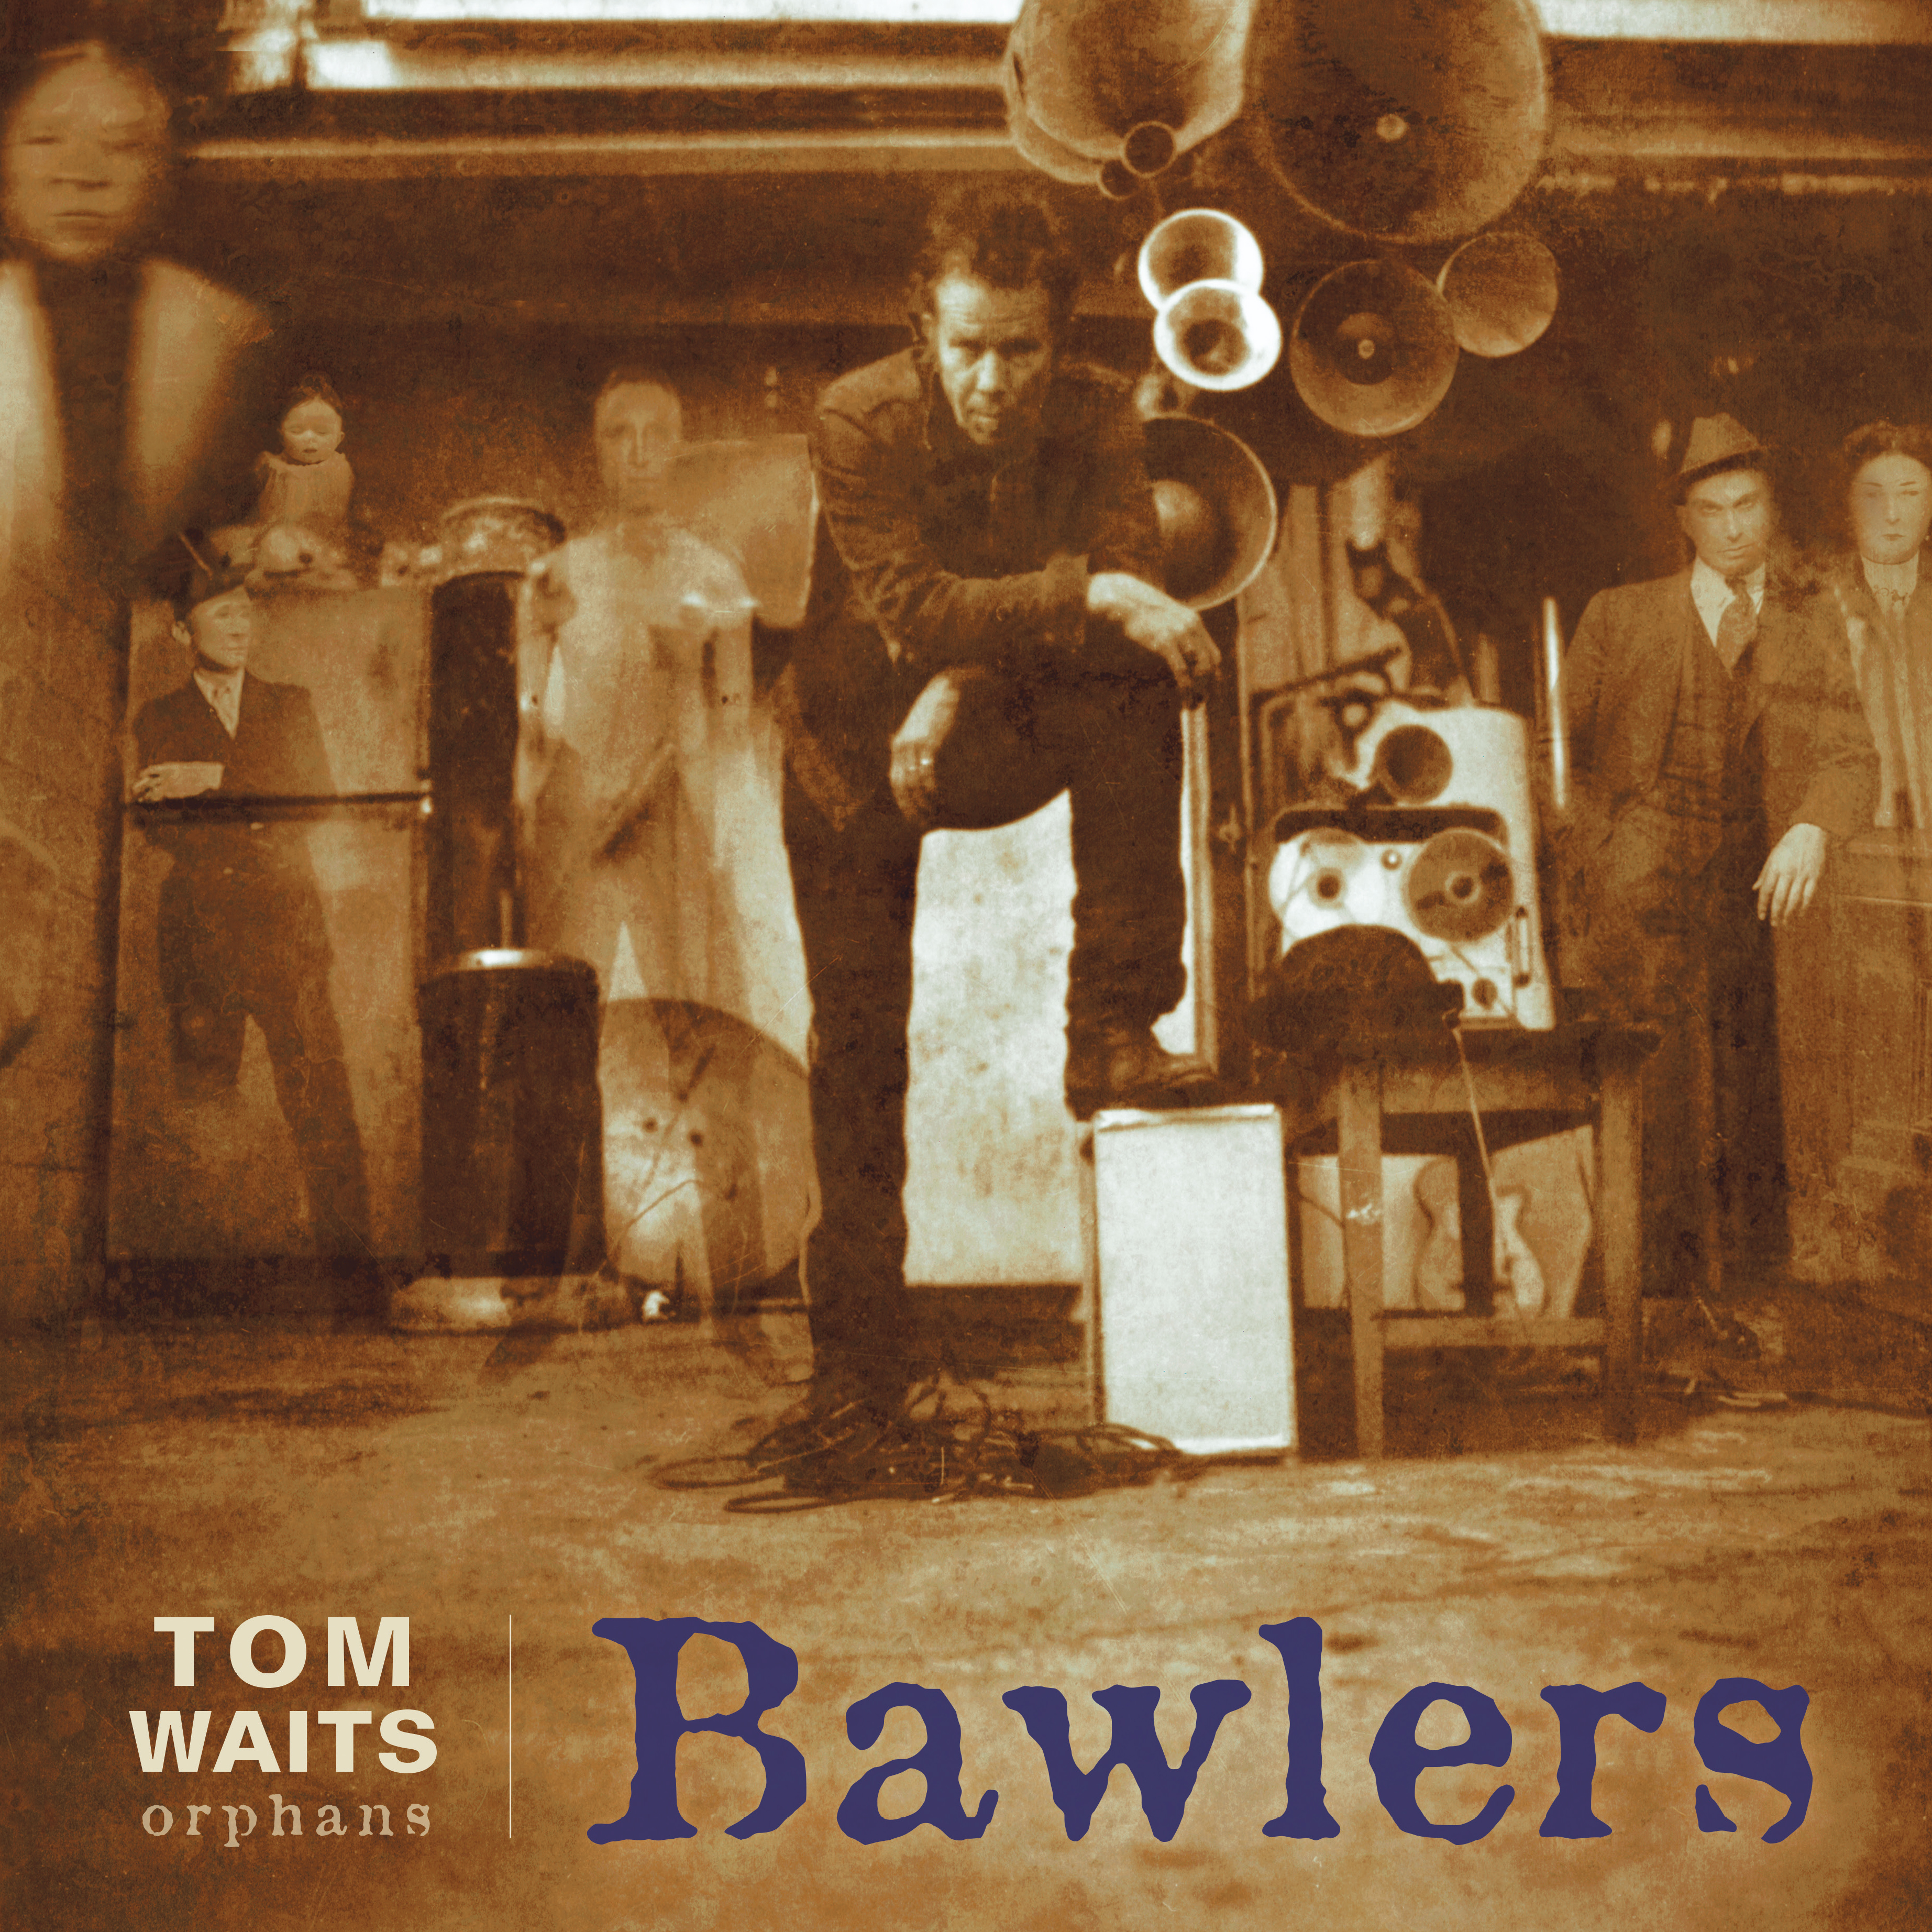 Tom Waits - Bawlers - CD